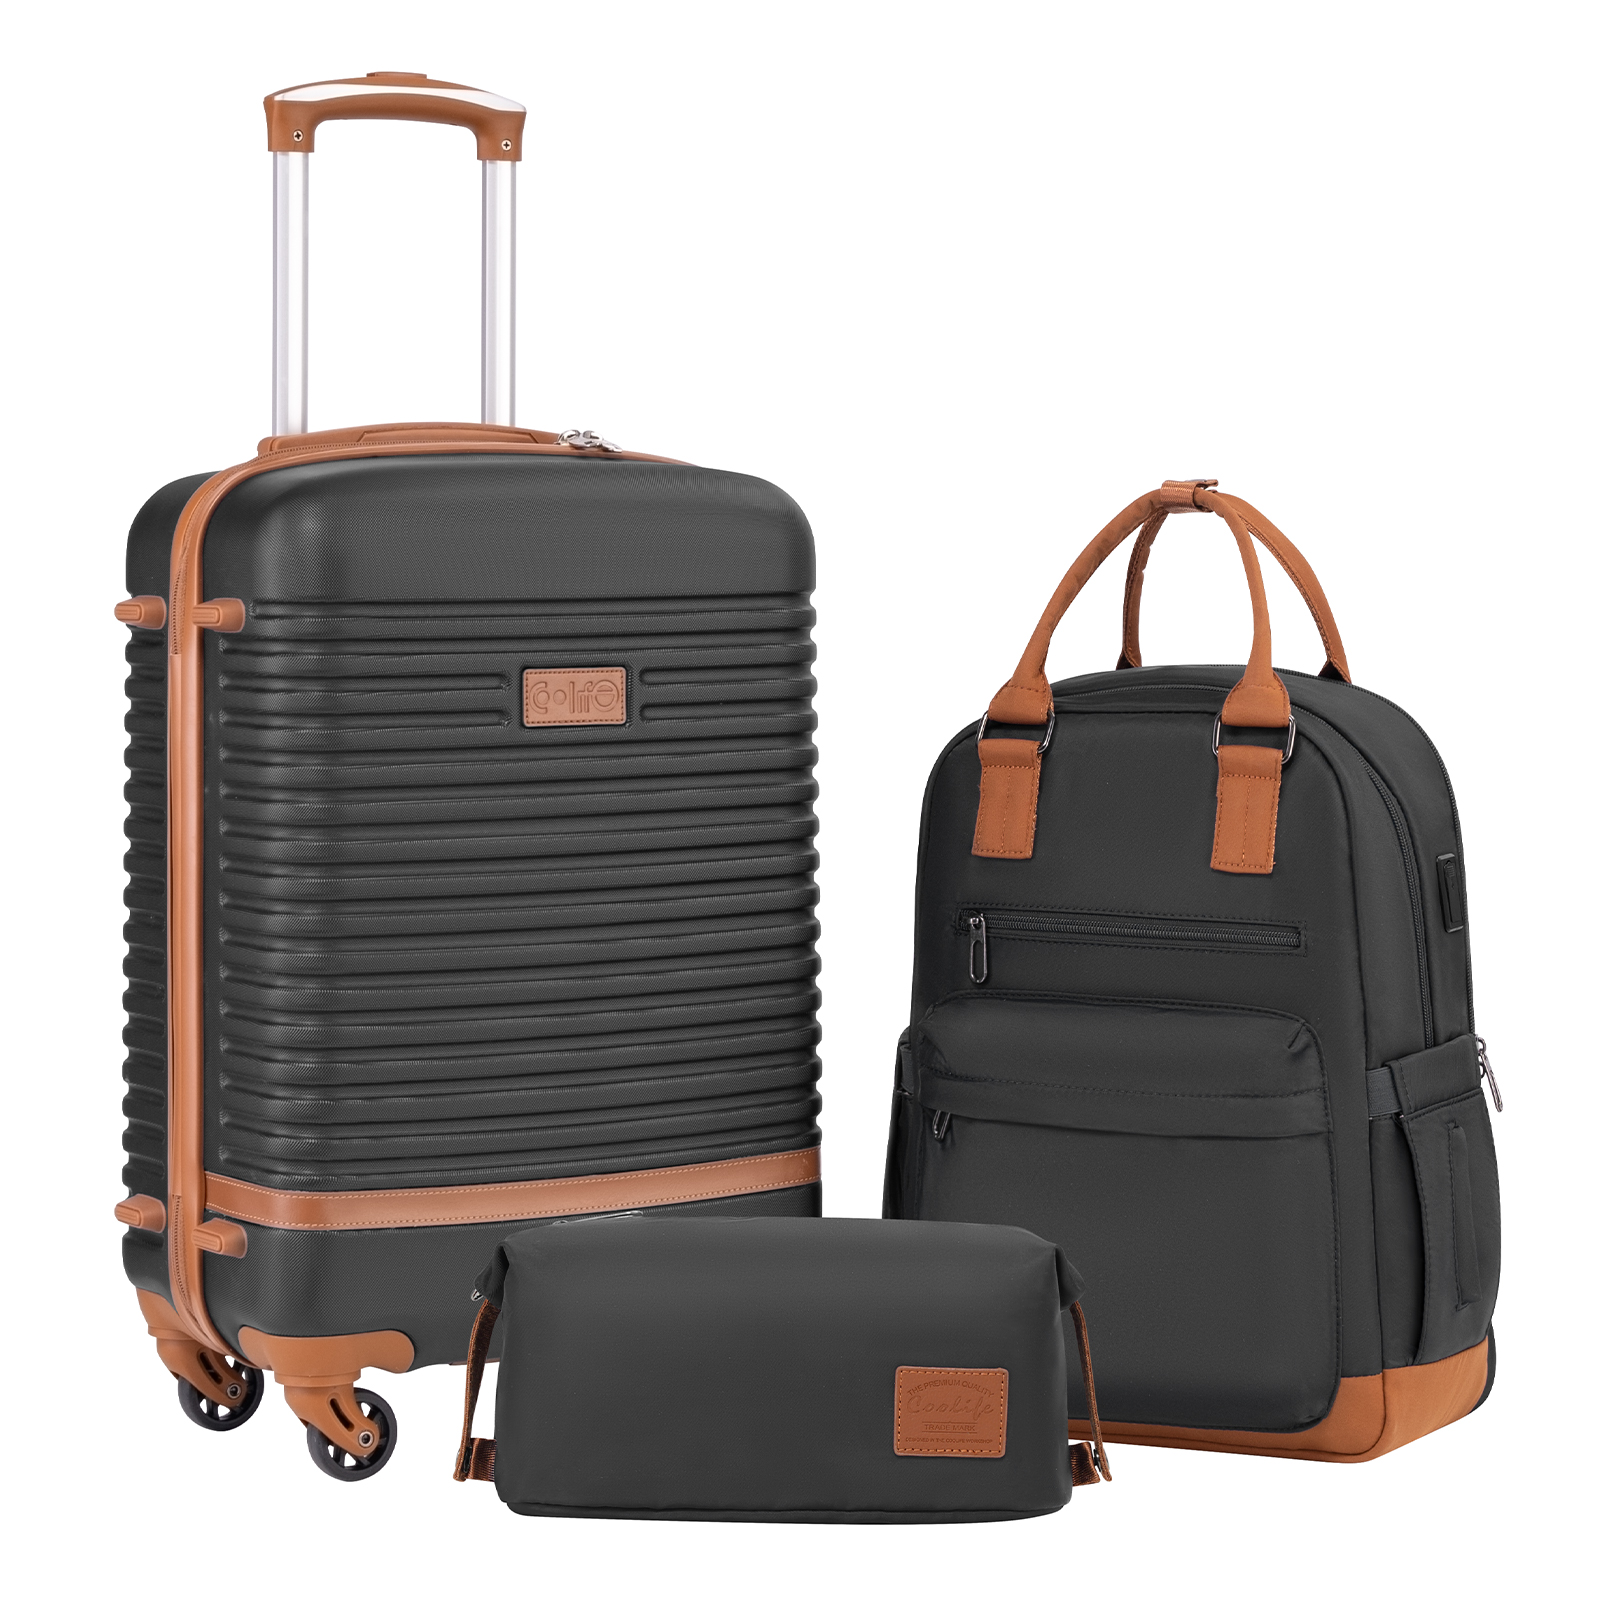 Coolife Suitcase Set 3 Piece Luggage Set Carry On Travel Luggage TSA Lock Spinner Wheels Hardshell Lightweight Luggage Set